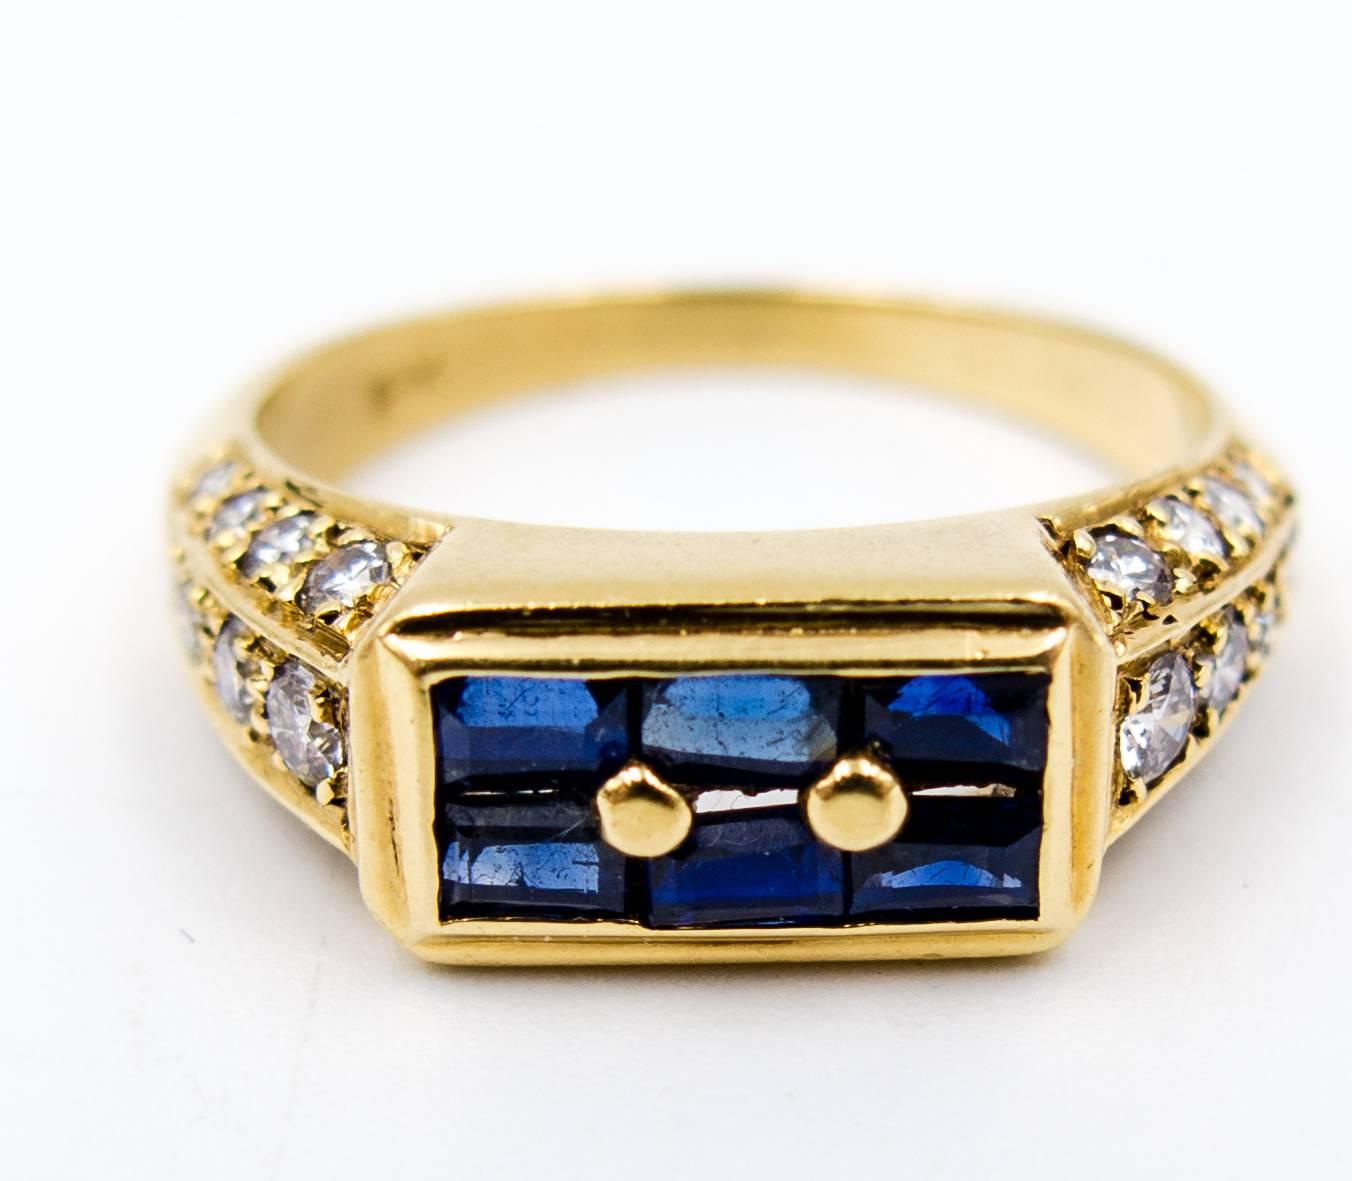 Dieser Ring mit Saphiren und Diamanten lässt sich hervorragend tragen, da die Fassung der Steine keine sichtbaren Zacken aufweist, die beim normalen Tragen versehentlich abgehoben werden könnten.   Sechs blaue Saphire im Smaragdschliff sitzen an der